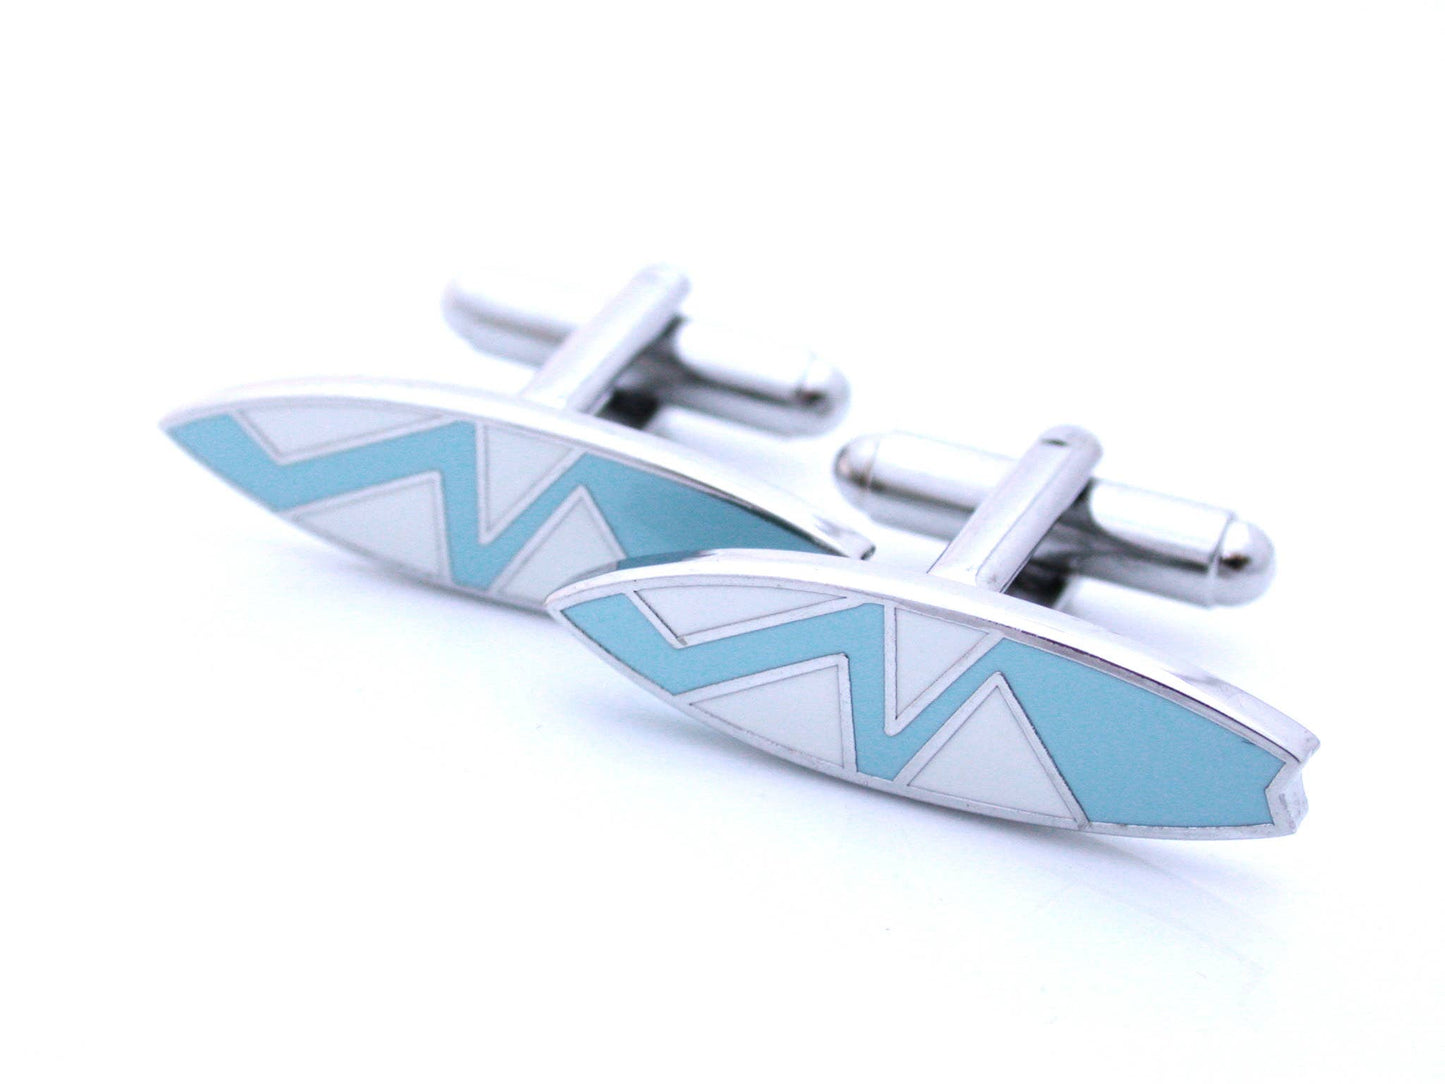 Surboard shaped cufflinks in blue enamel with a zig zag pattern